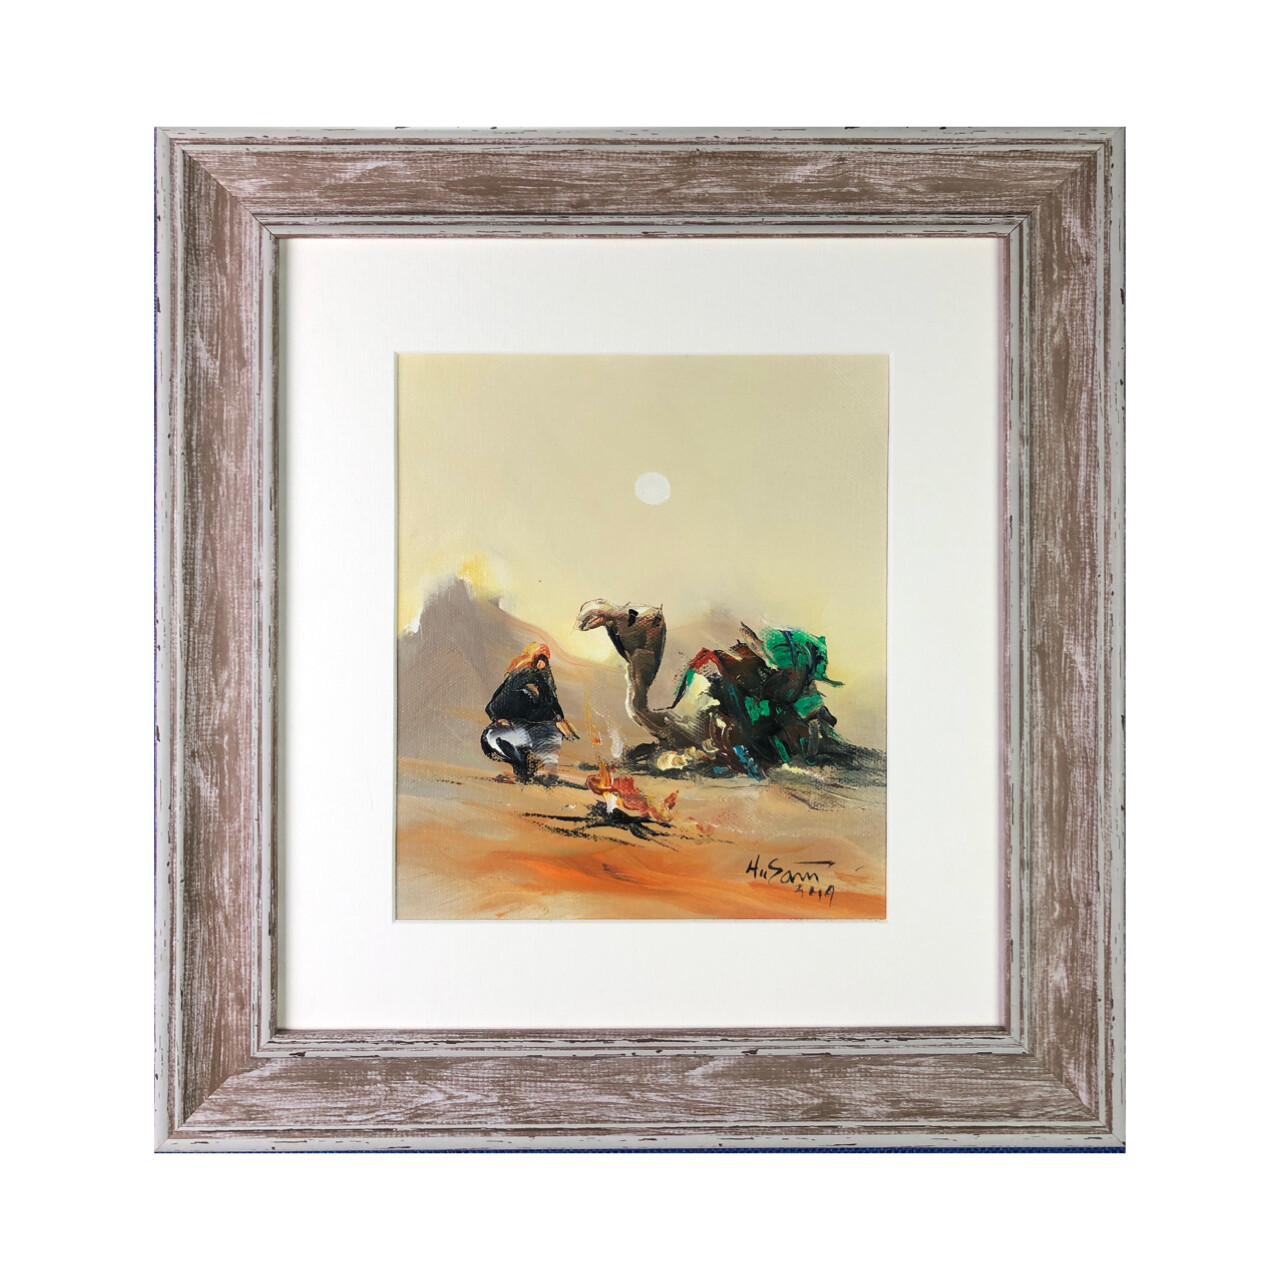 Bedouin & Camel - Knife Art Oil Painting